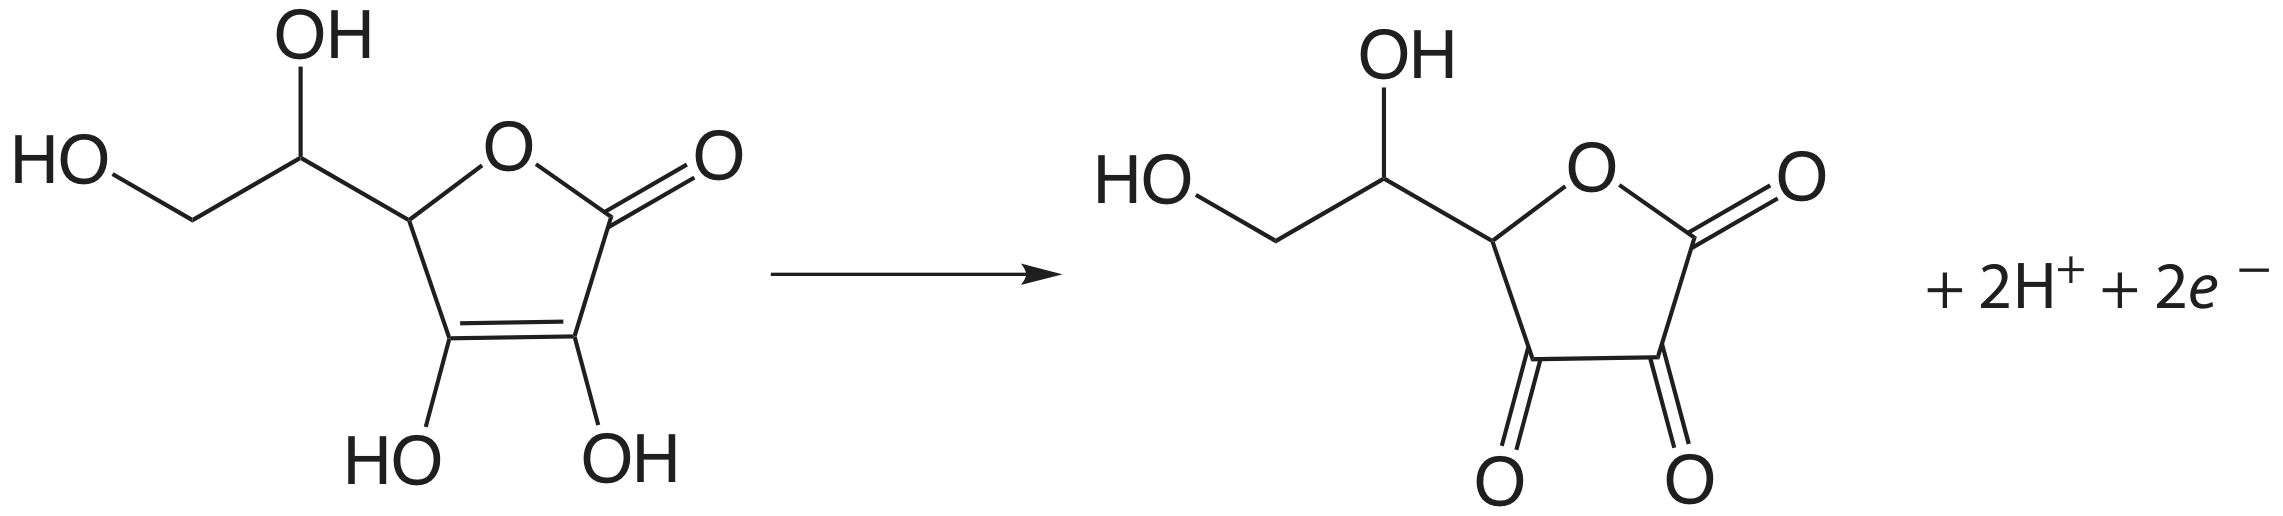 El ácido ascórbico convierte los dos grupos hidroxilo inferiores en cetonas y reduce el alqueno a un alcano. En este proceso, se eliminan dos hidrógenos y dos electrones.